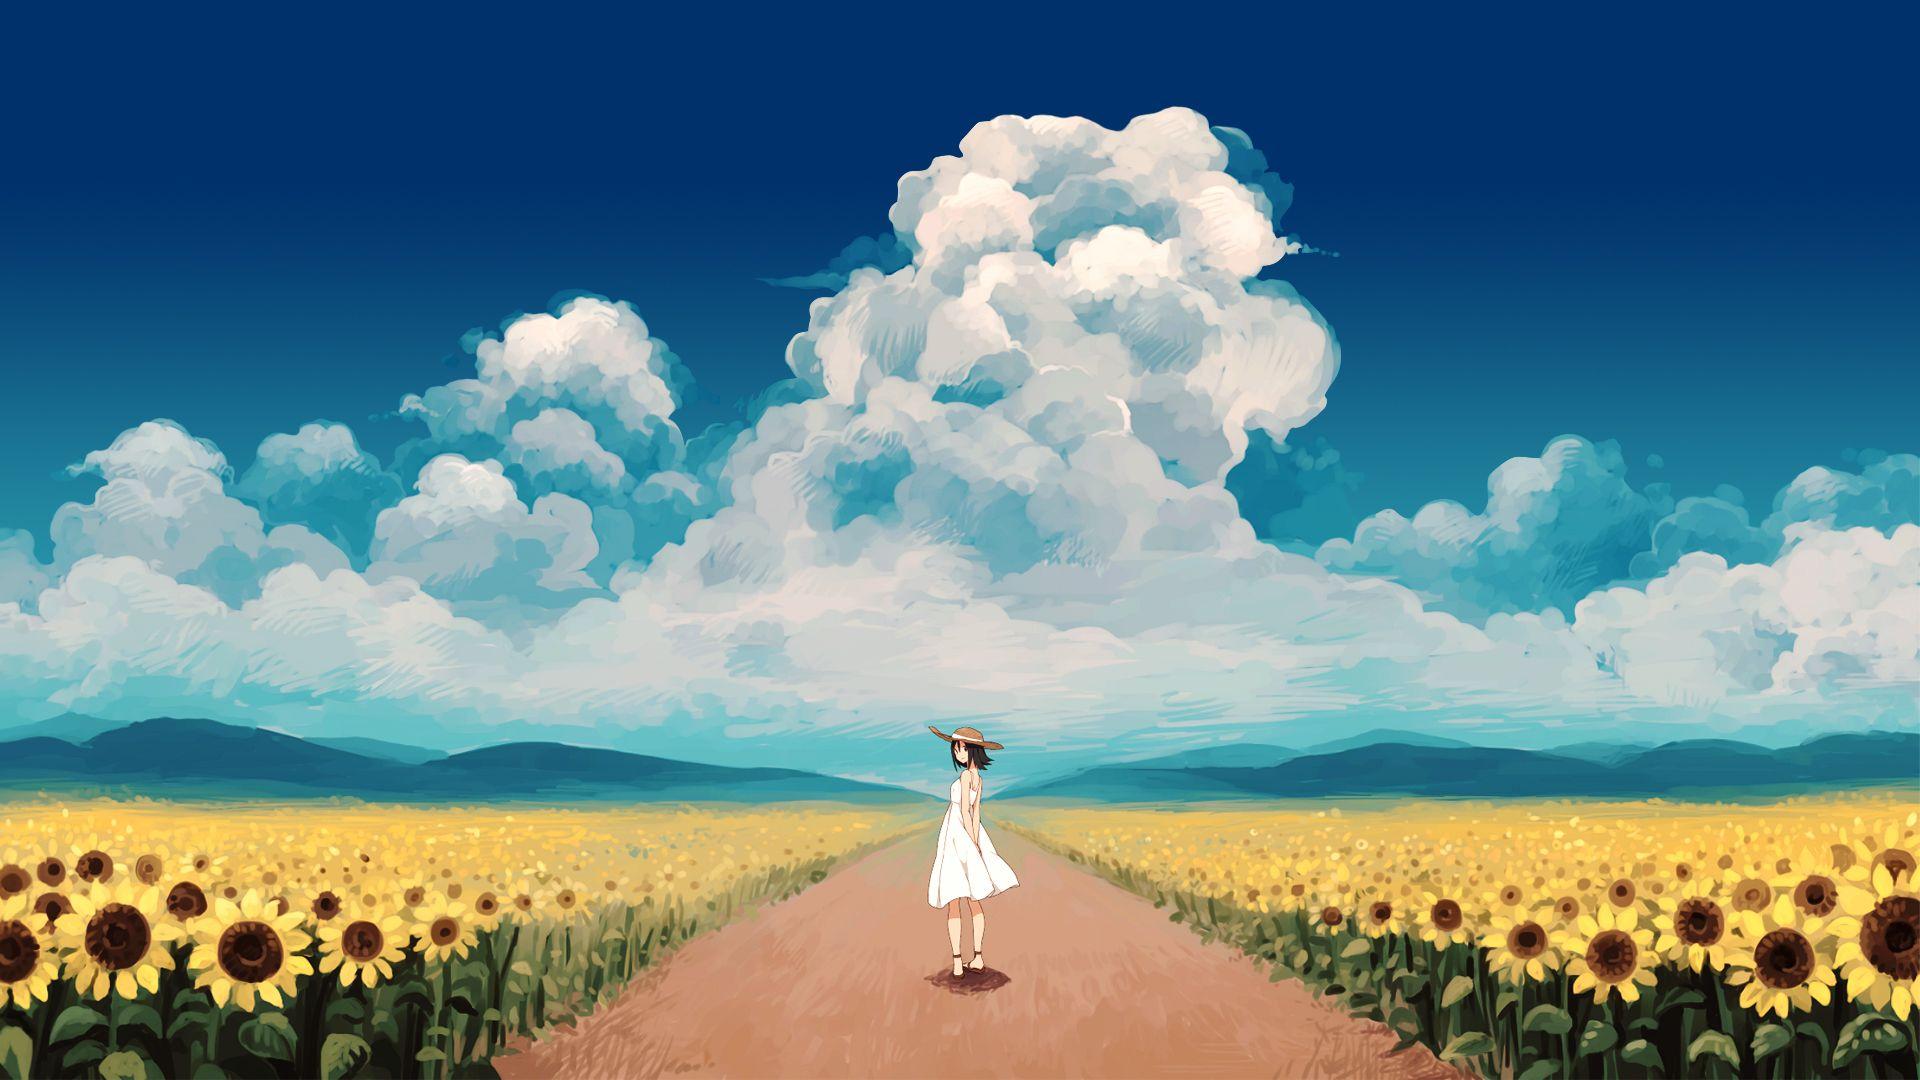 Anime Sunflower Wallpapers Top Free Anime Sunflower Backgrounds Wallpaperaccess Valitse laajasta valikoimasta samankaltaisia kohtauksia. anime sunflower wallpapers top free